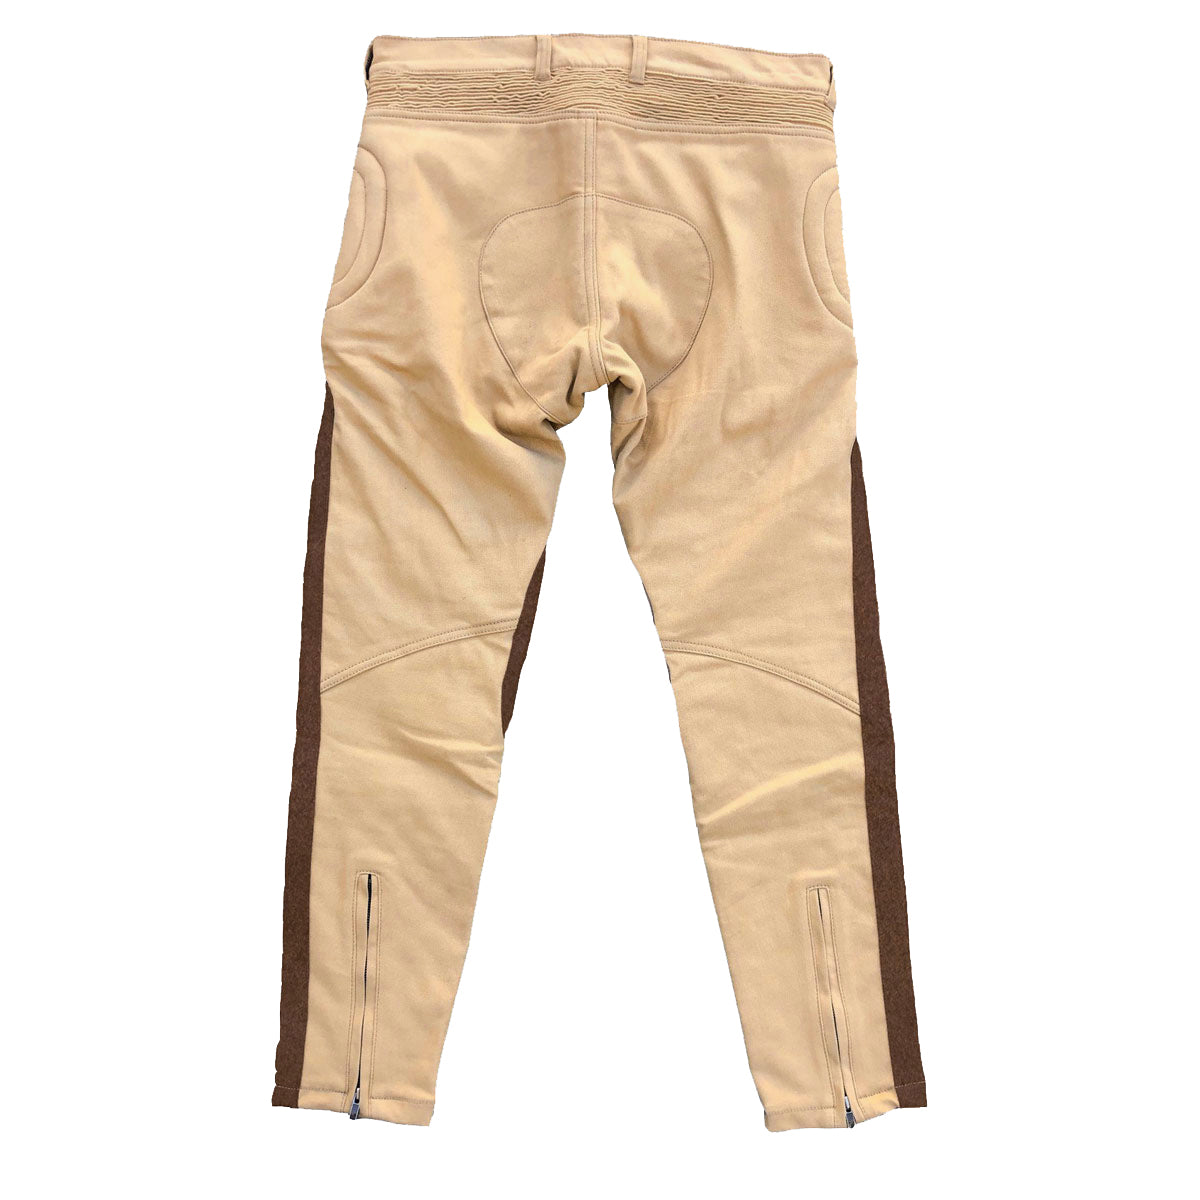 Skin Tones Men's Brown Leather Pants Size 16 Motorcycle Bikers Trousers  Vintage | eBay